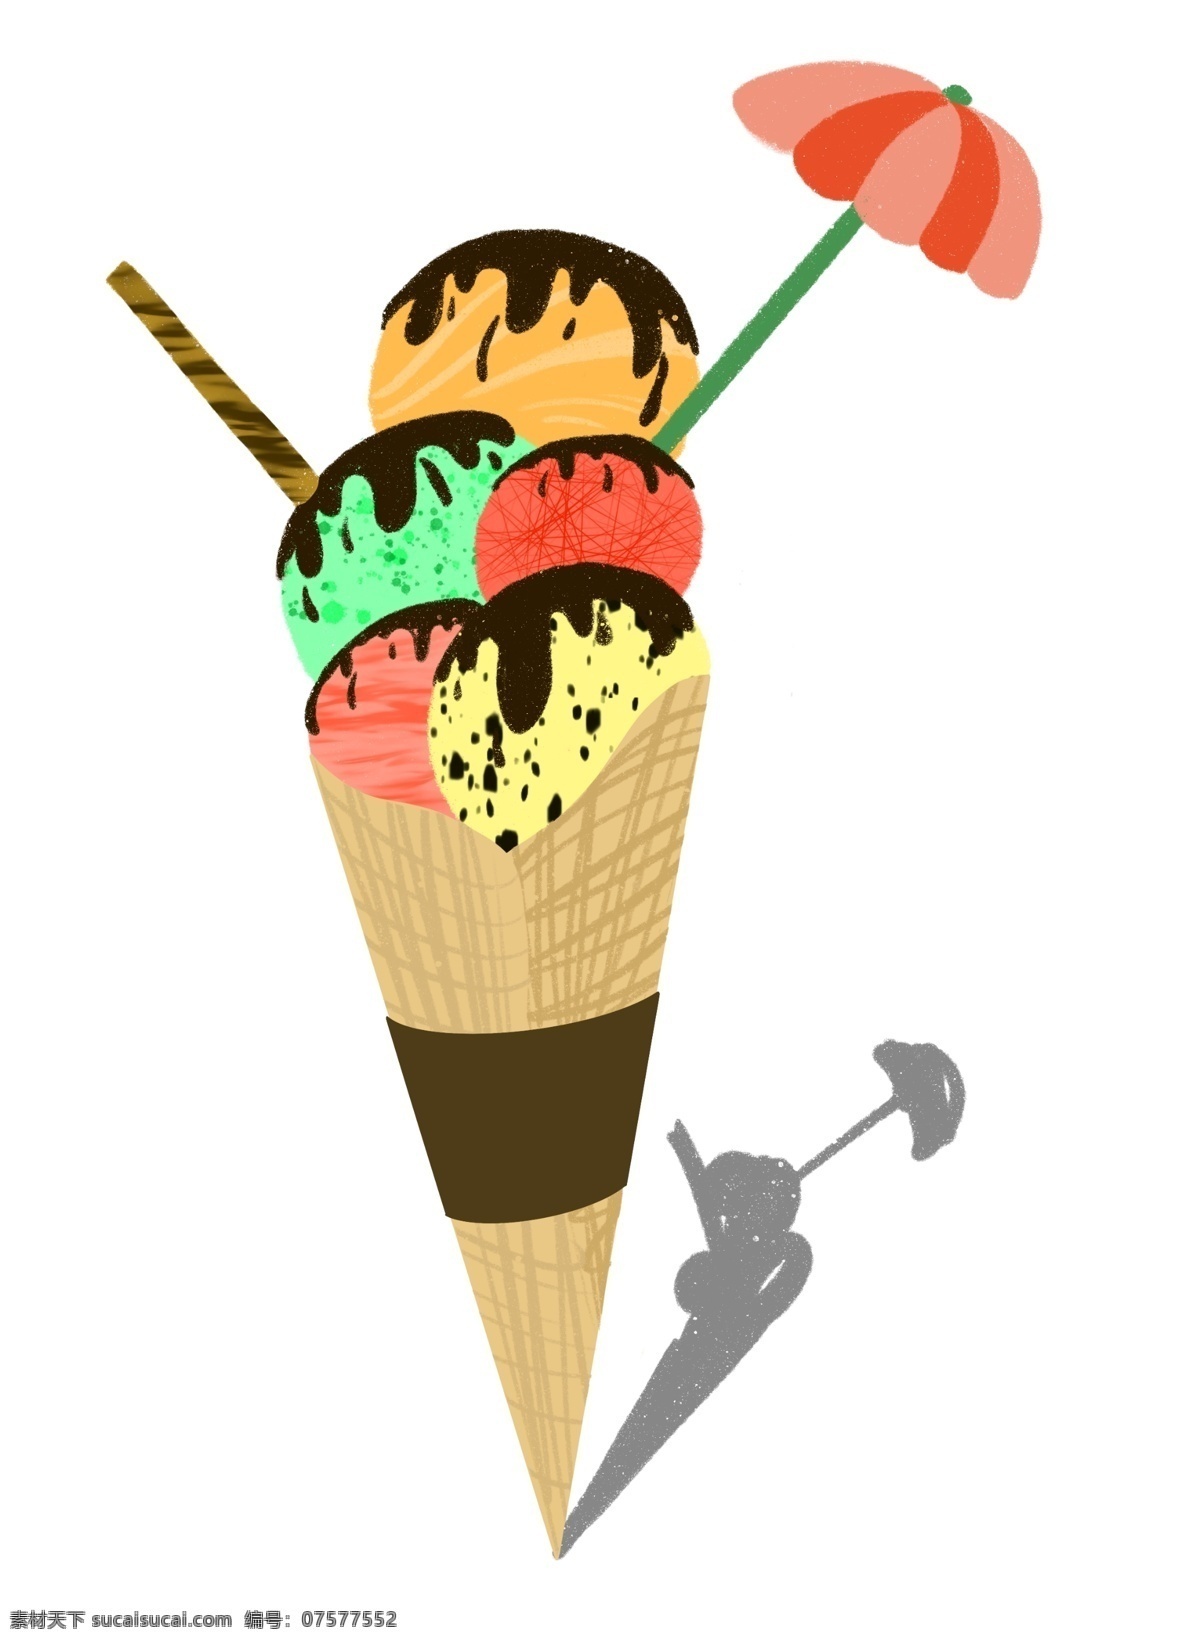 冰淇淋 夏季 手绘 冰糕 夏季主题 手绘风格 装饰插图 夏季冰凉 甜筒 甜点 装饰小图 插图